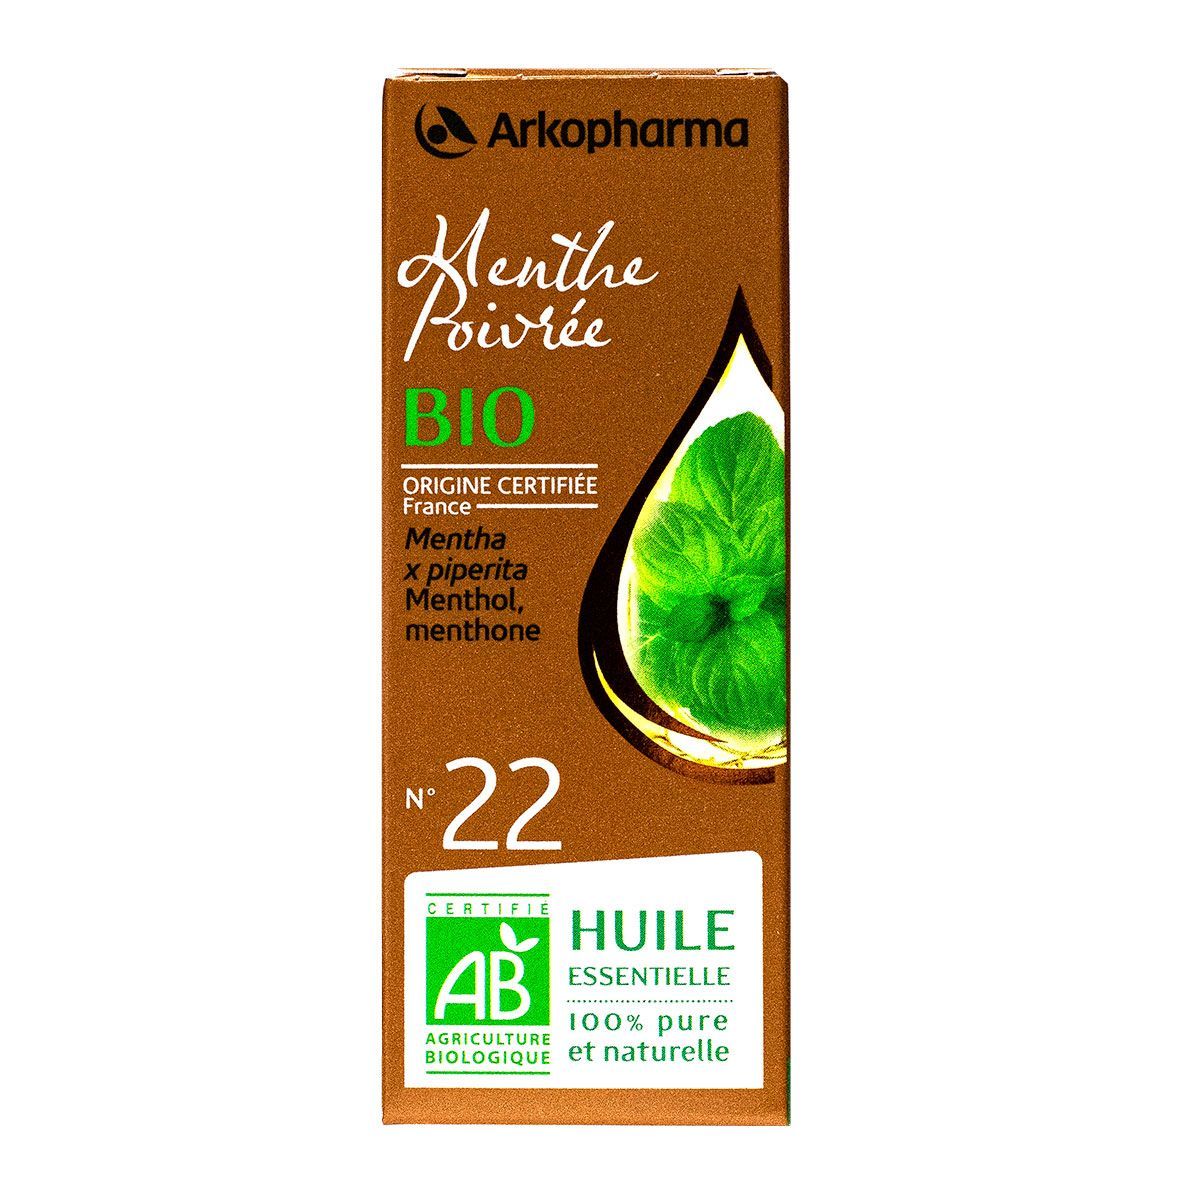 L'huile essentielle de menthe poivrée Arkopharma est utilisée pour  favoriser une bonne digestion.